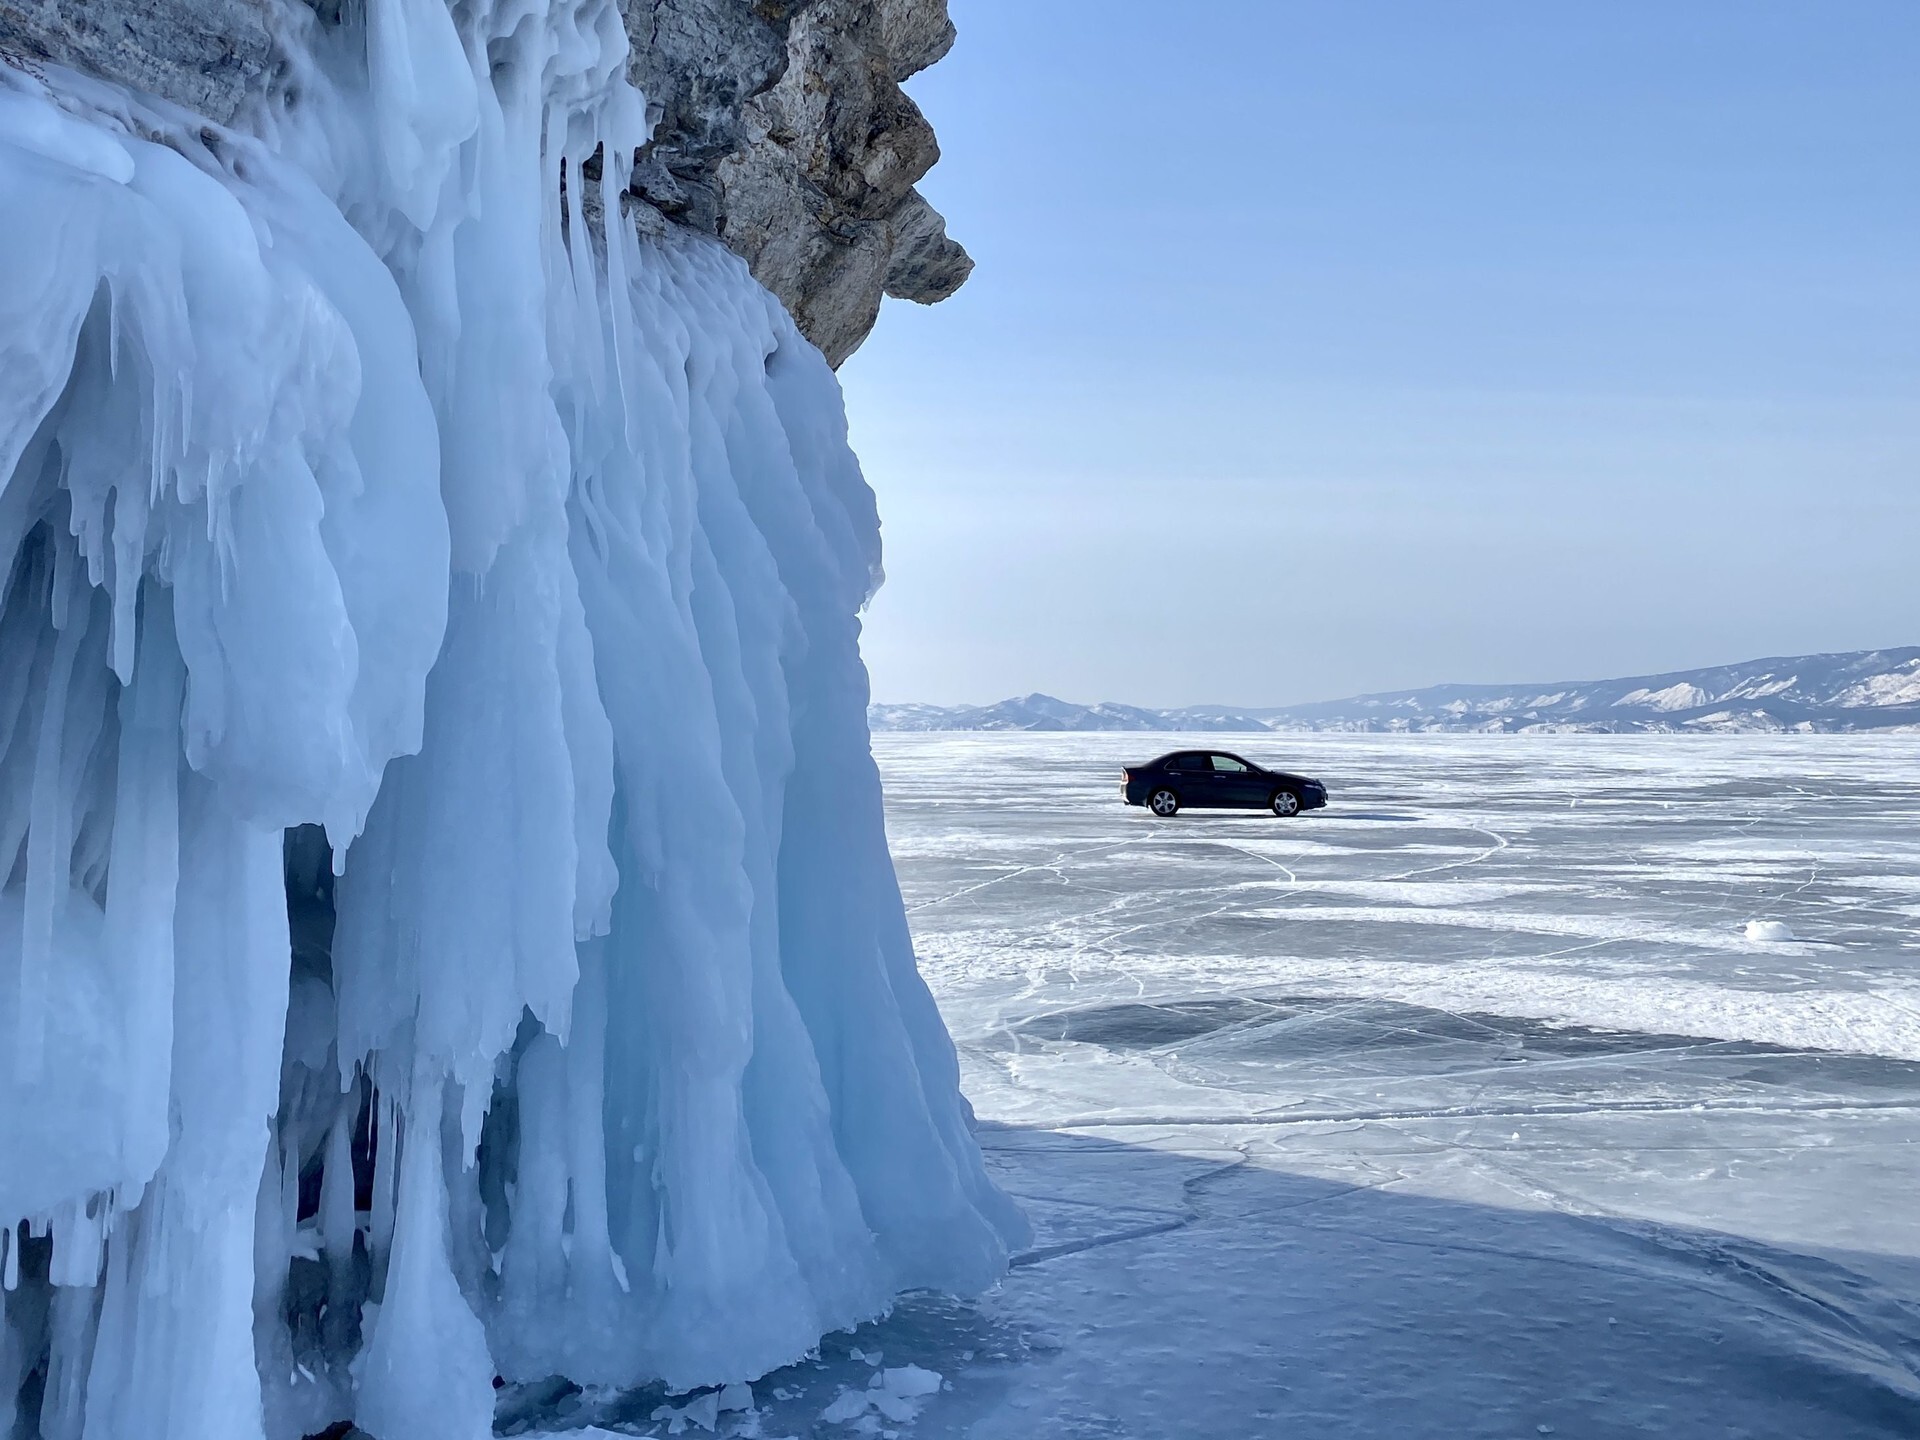 Cuando el espesor del hielo alcanza los 30 cm, ya es posible circular en coche sobre él. Pero los servicios de carreteras no se arriesgan: esperan a que el hielo llegue a tener medio metro de espesor.